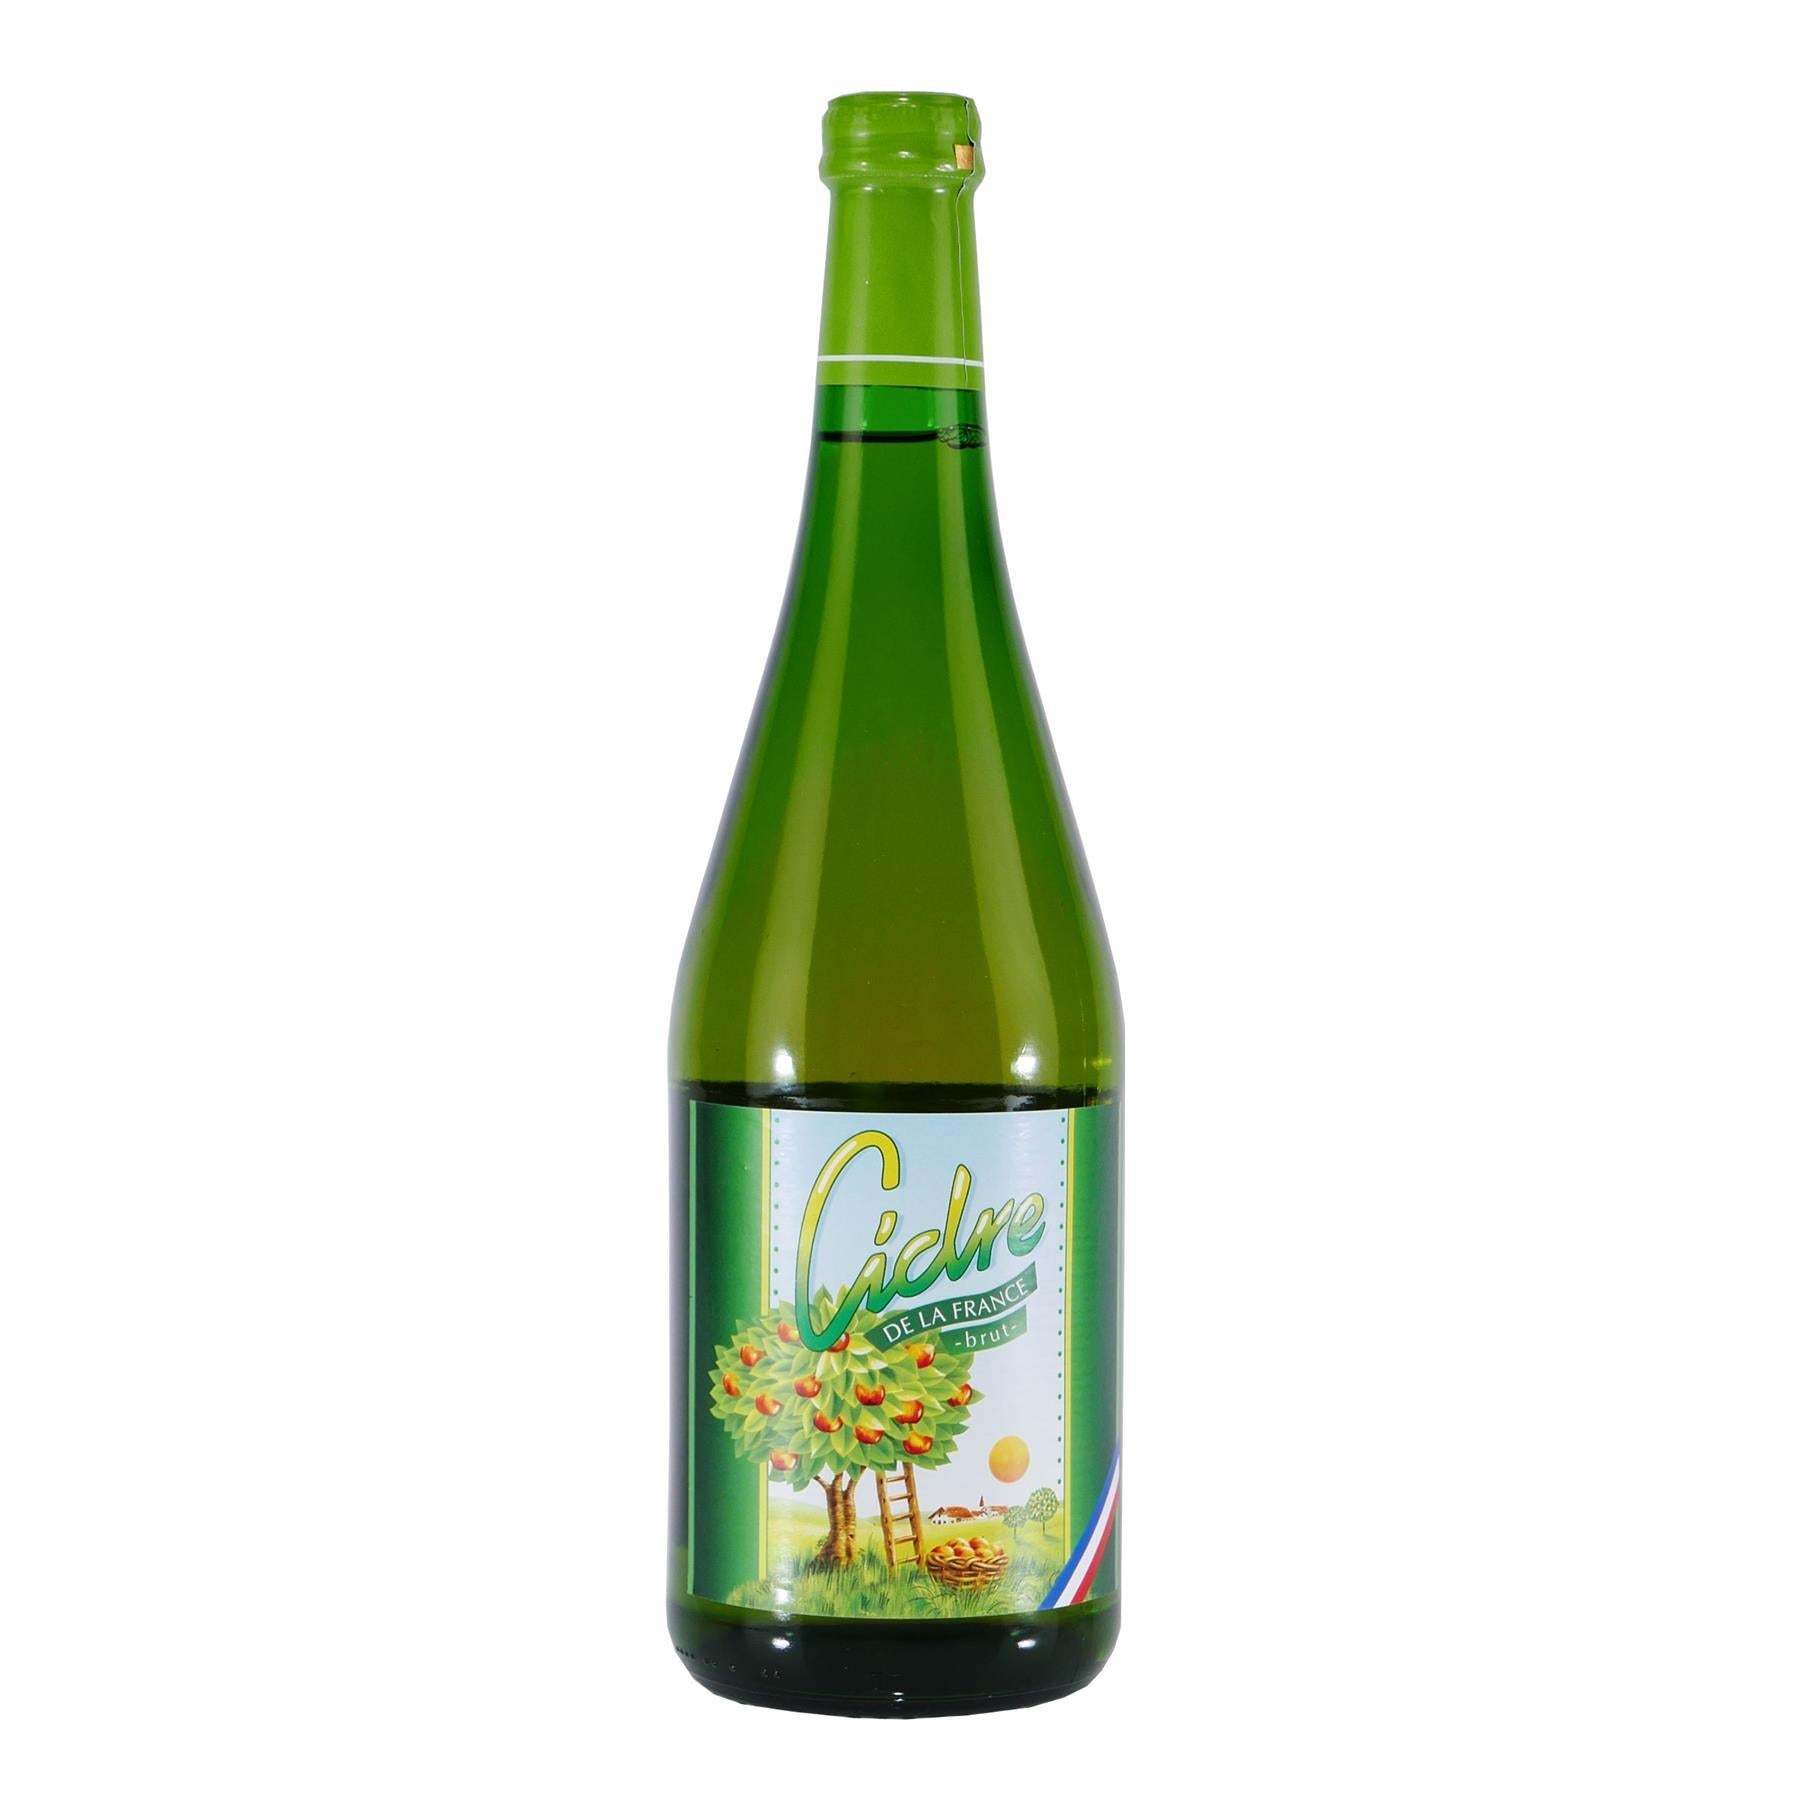 Cidre de la France -brut- Apfelwein (6 x 0,75L)